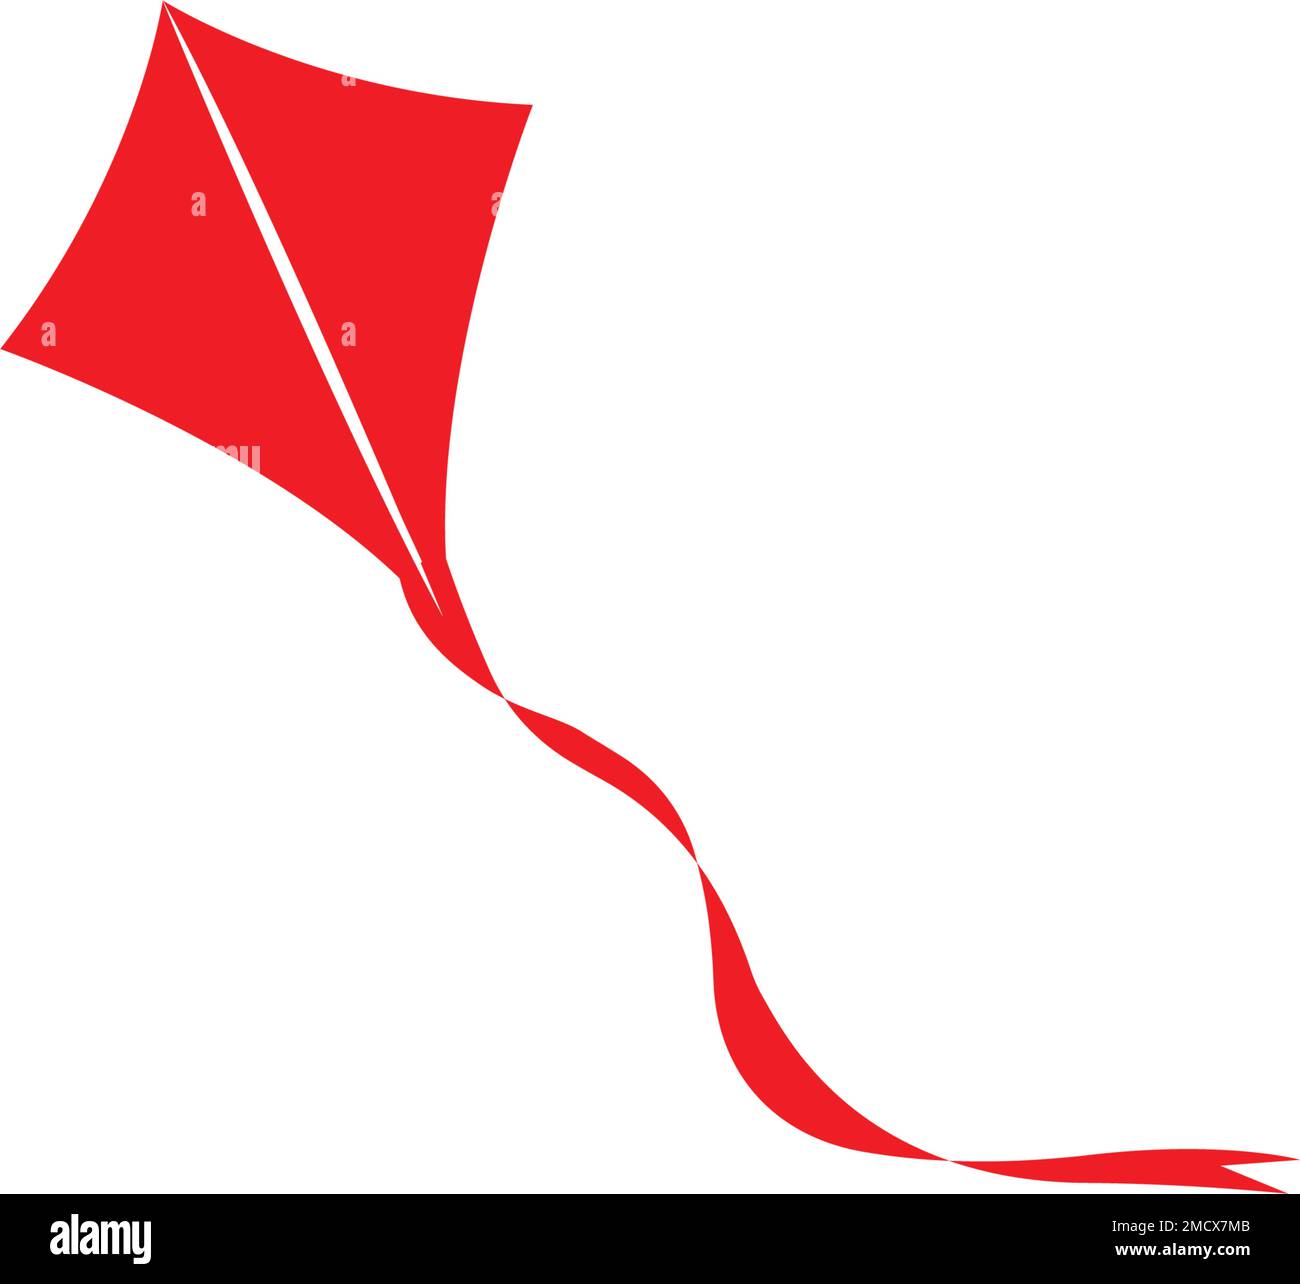 kite logo stock illustration design Stock Vector